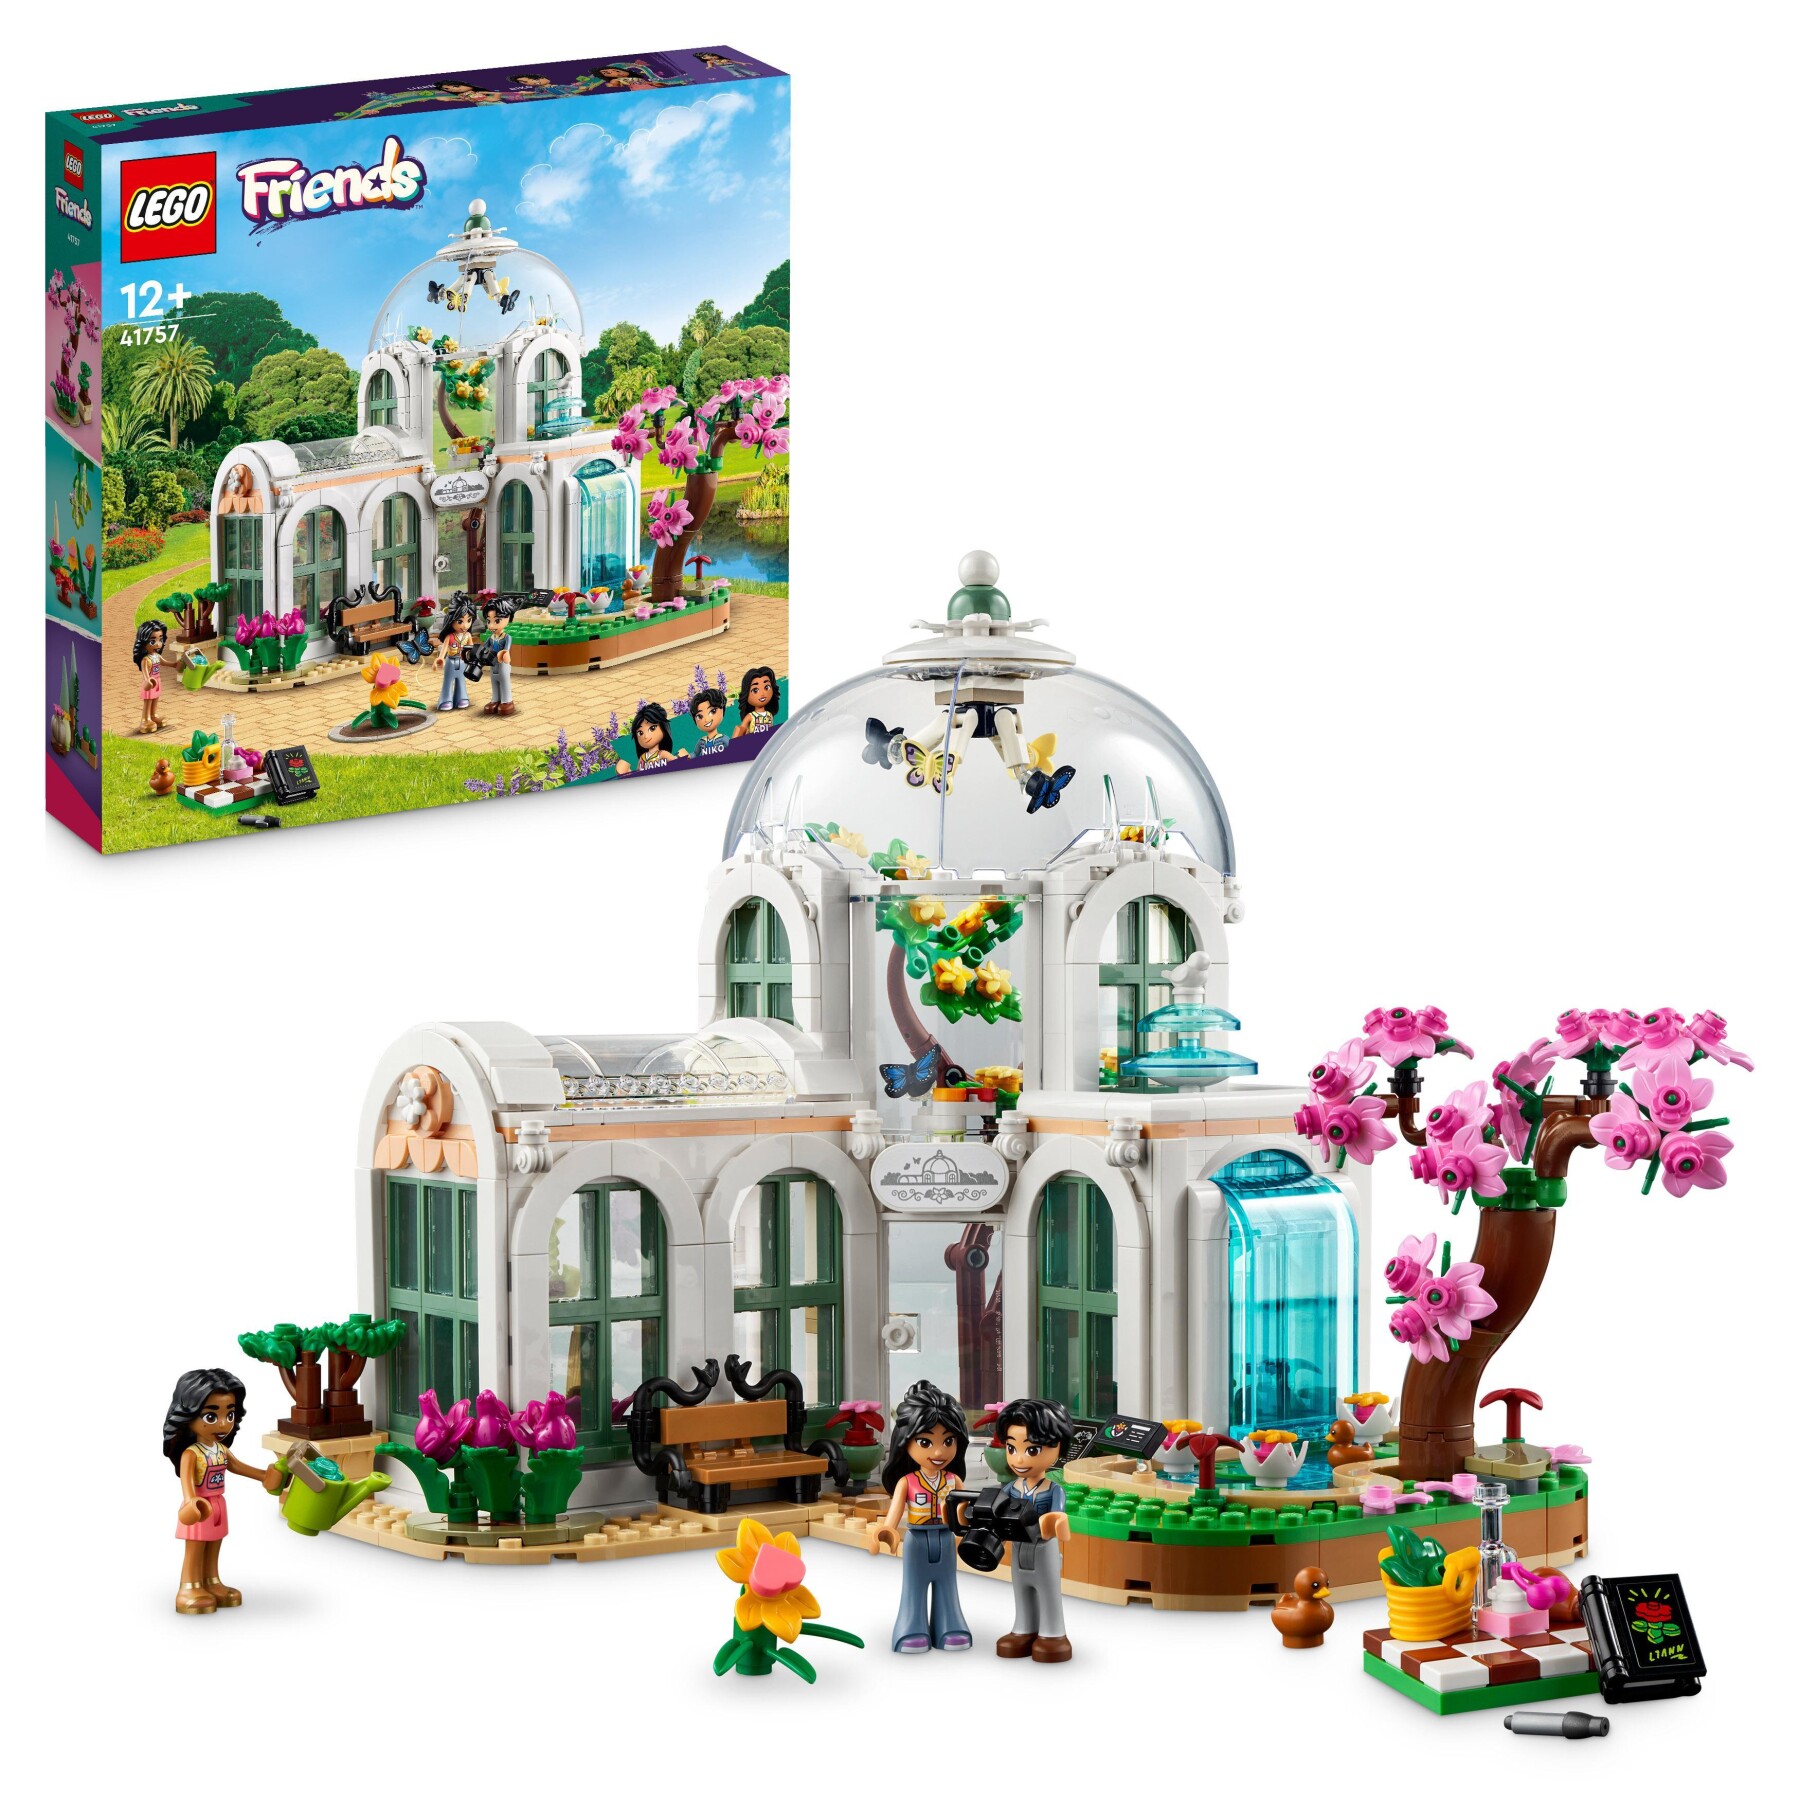 Lego friends 41757 giardino botanico con fiori e piante, modellino